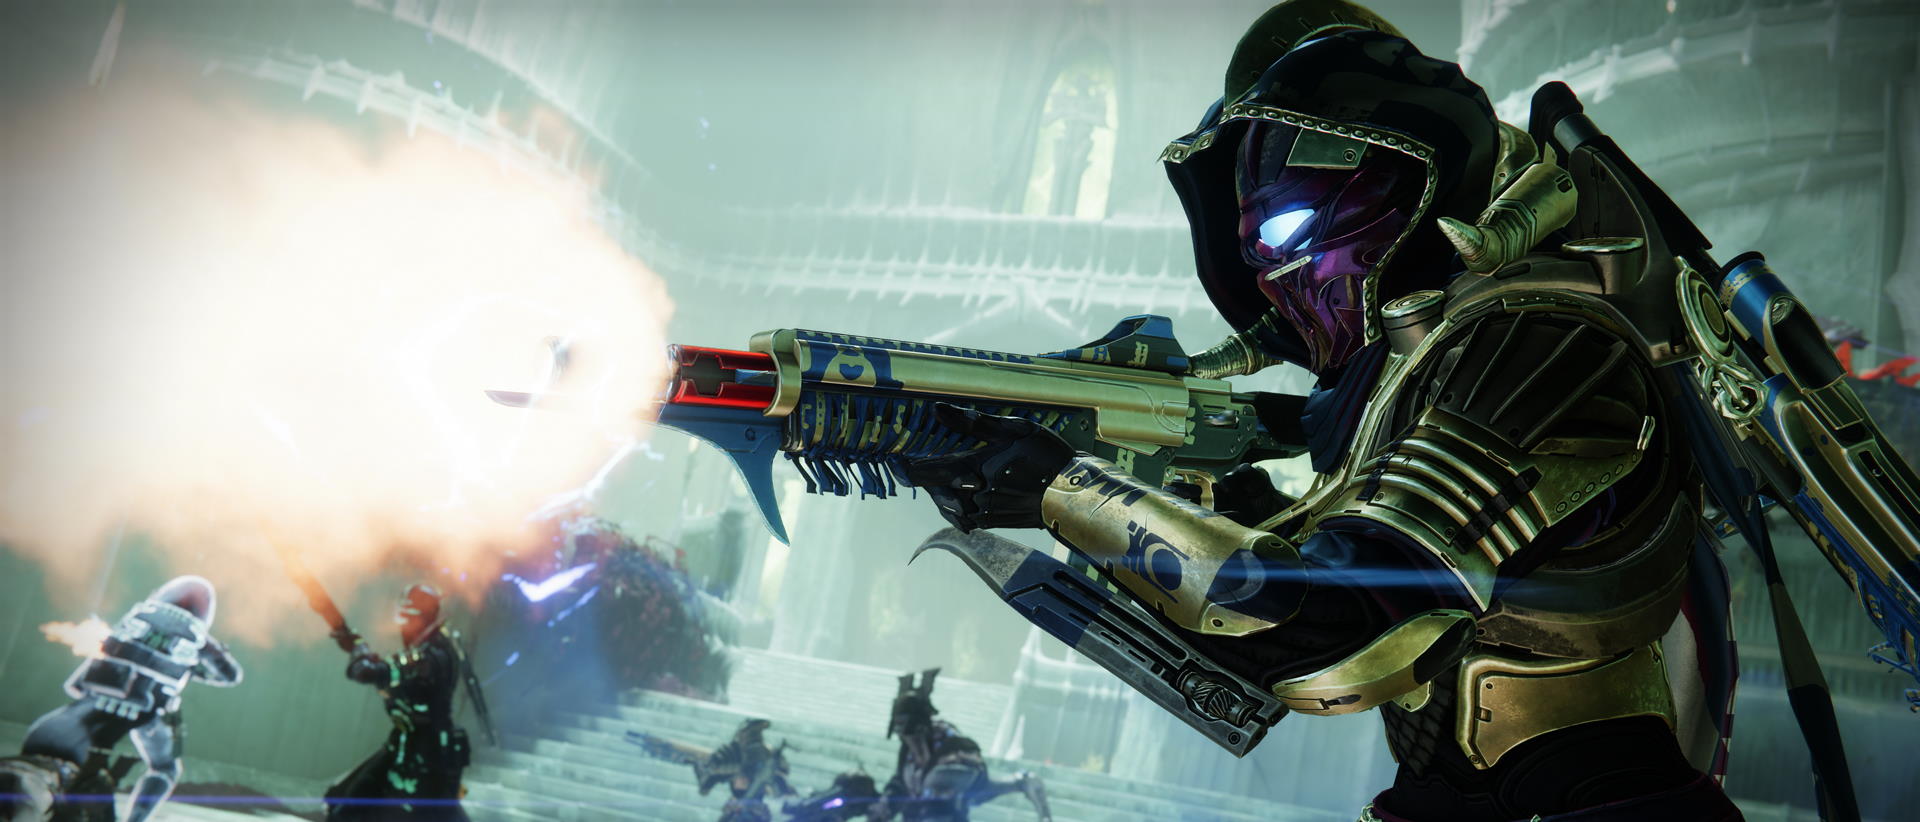 Les joueurs de Destiny 2 seront bientôt interdits d'équiper des armes artisanales